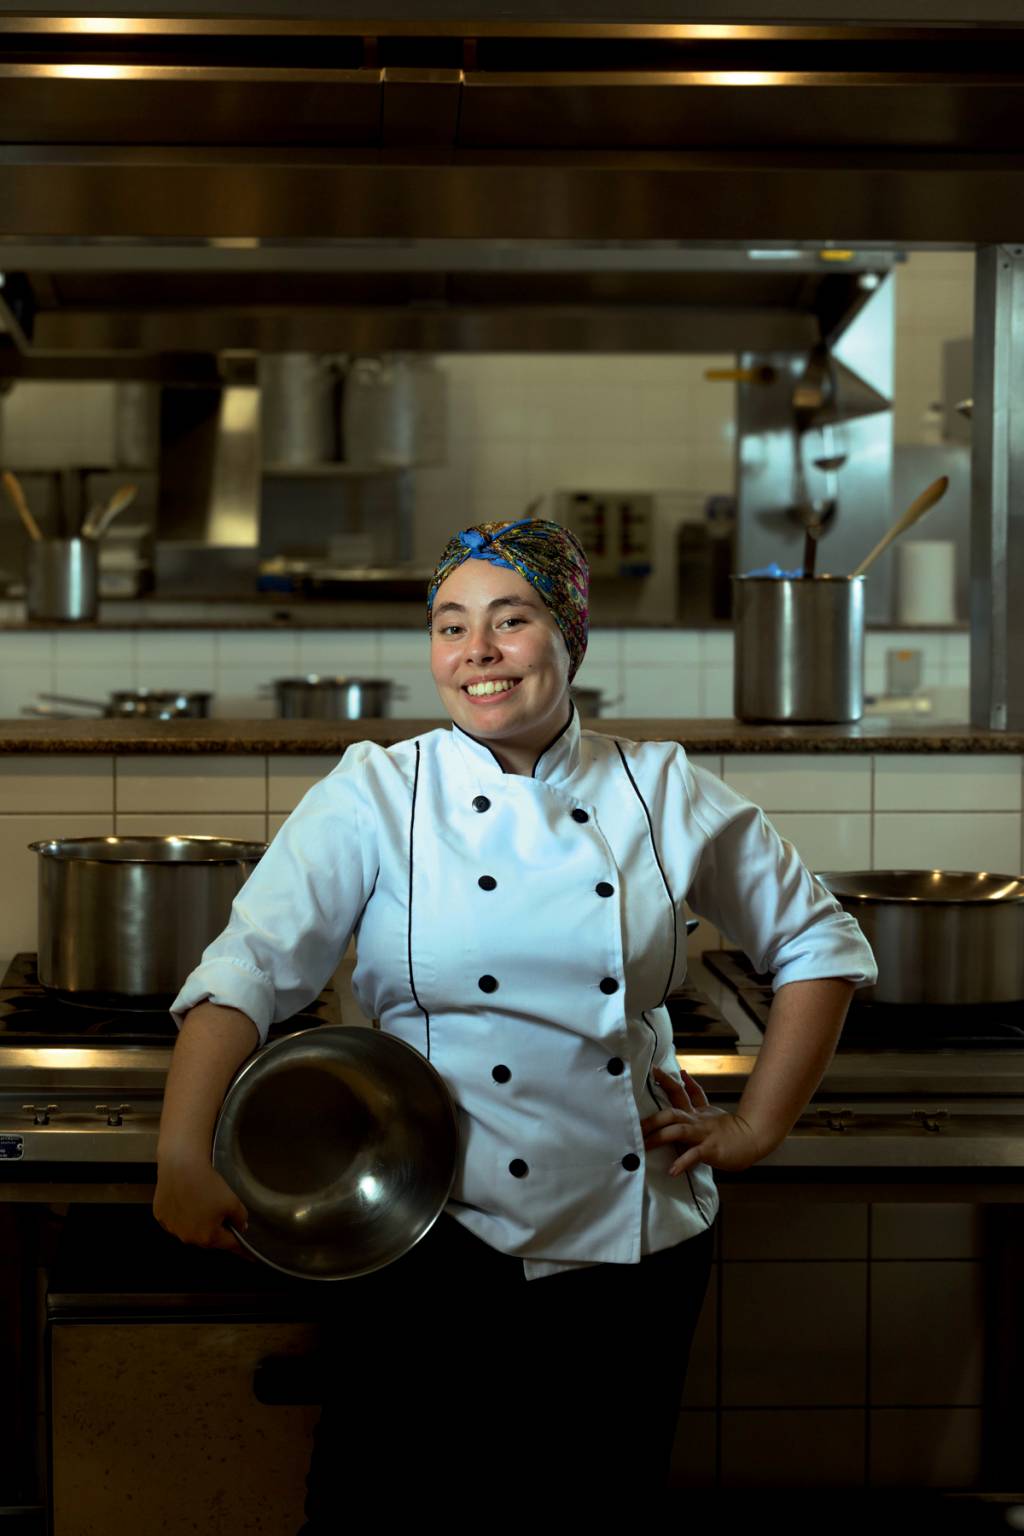 Imagem mostra Bia sorrindo, com roupa de chef de cozinha, segurando um grande recipiente de alumínio na lateral do corpo. Ela está em uma cozinha